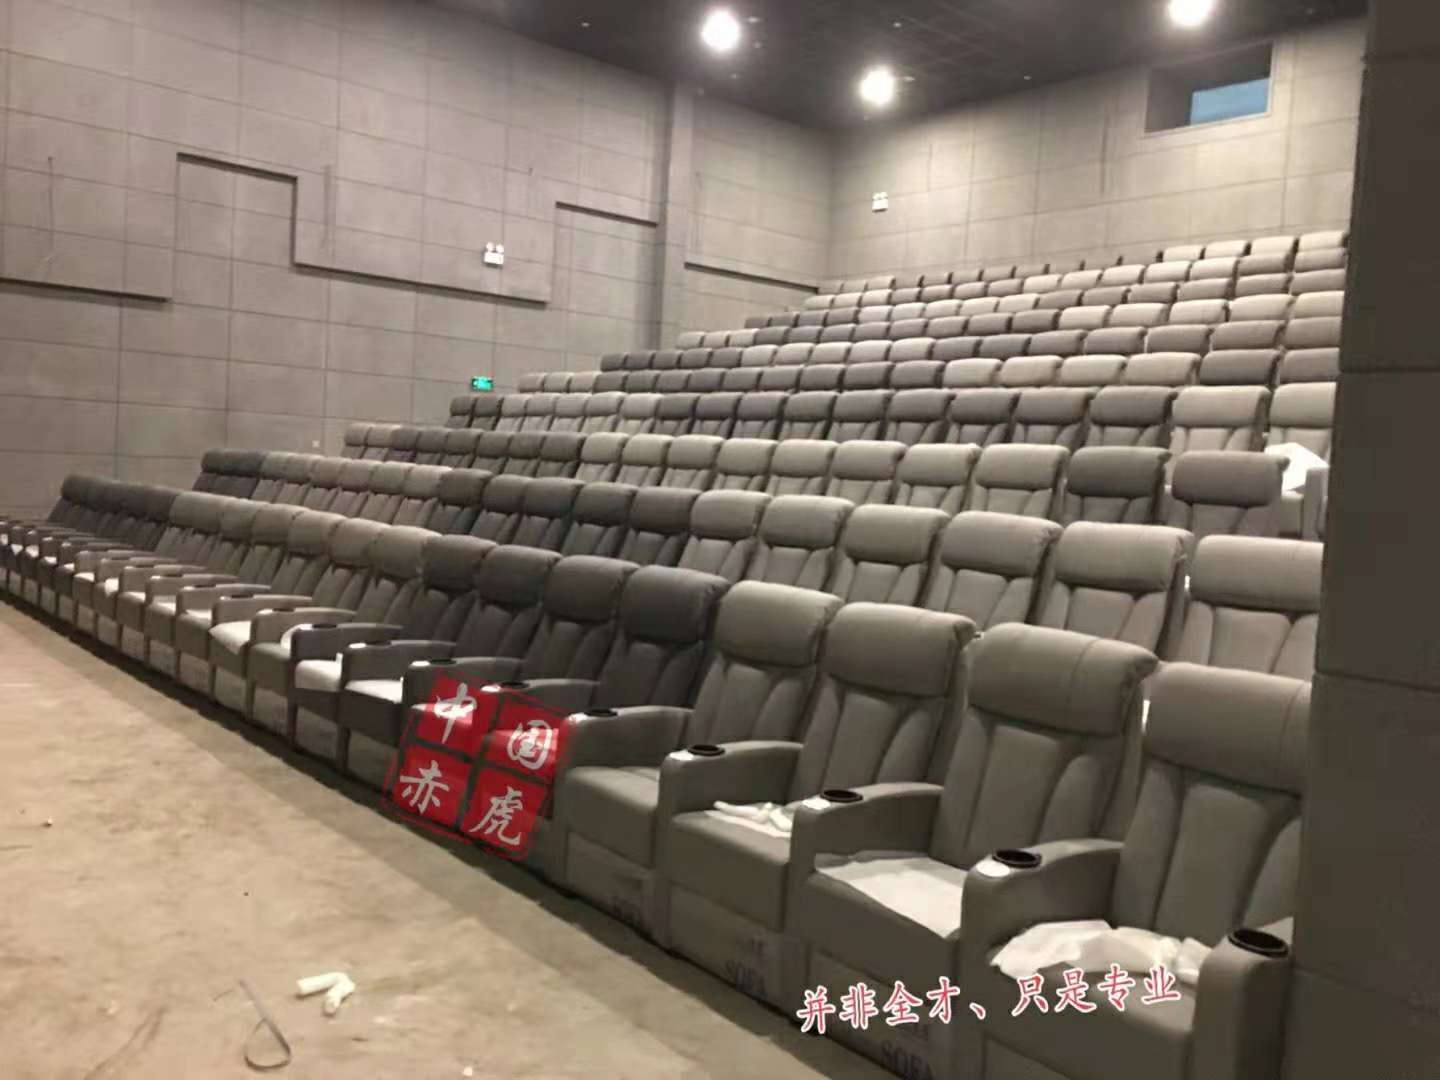 赤虎供应商业电影院固定位vip座椅